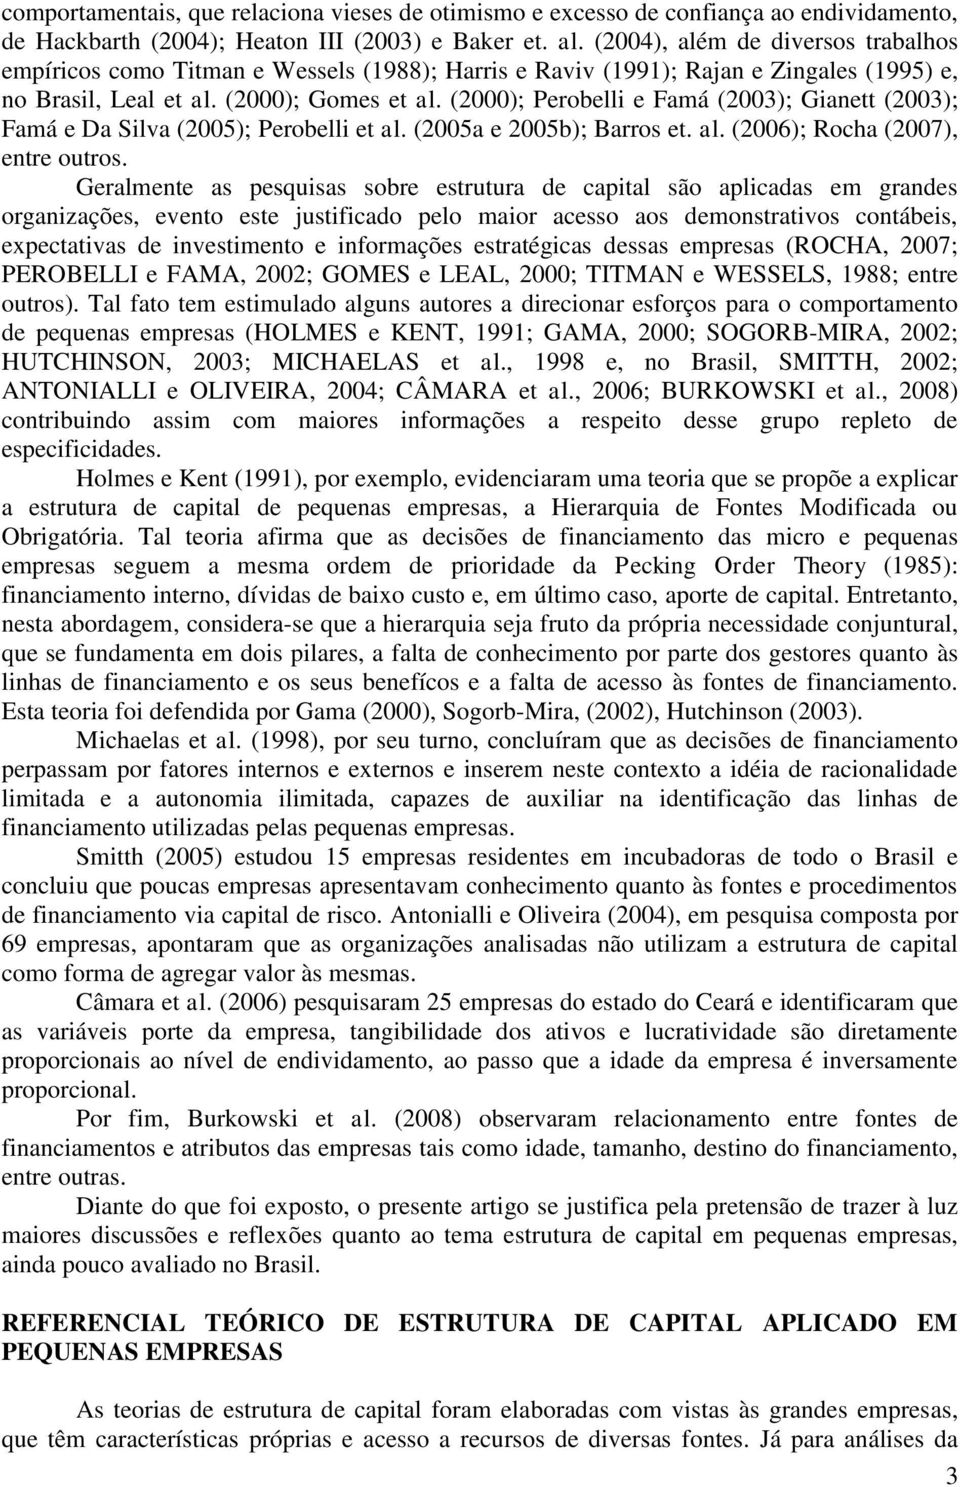 (2000); Perobelli e Famá (2003); Gianett (2003); Famá e Da Silva (2005); Perobelli et al. (2005a e 2005b); Barros et. al. (2006); Rocha (2007), entre outros.